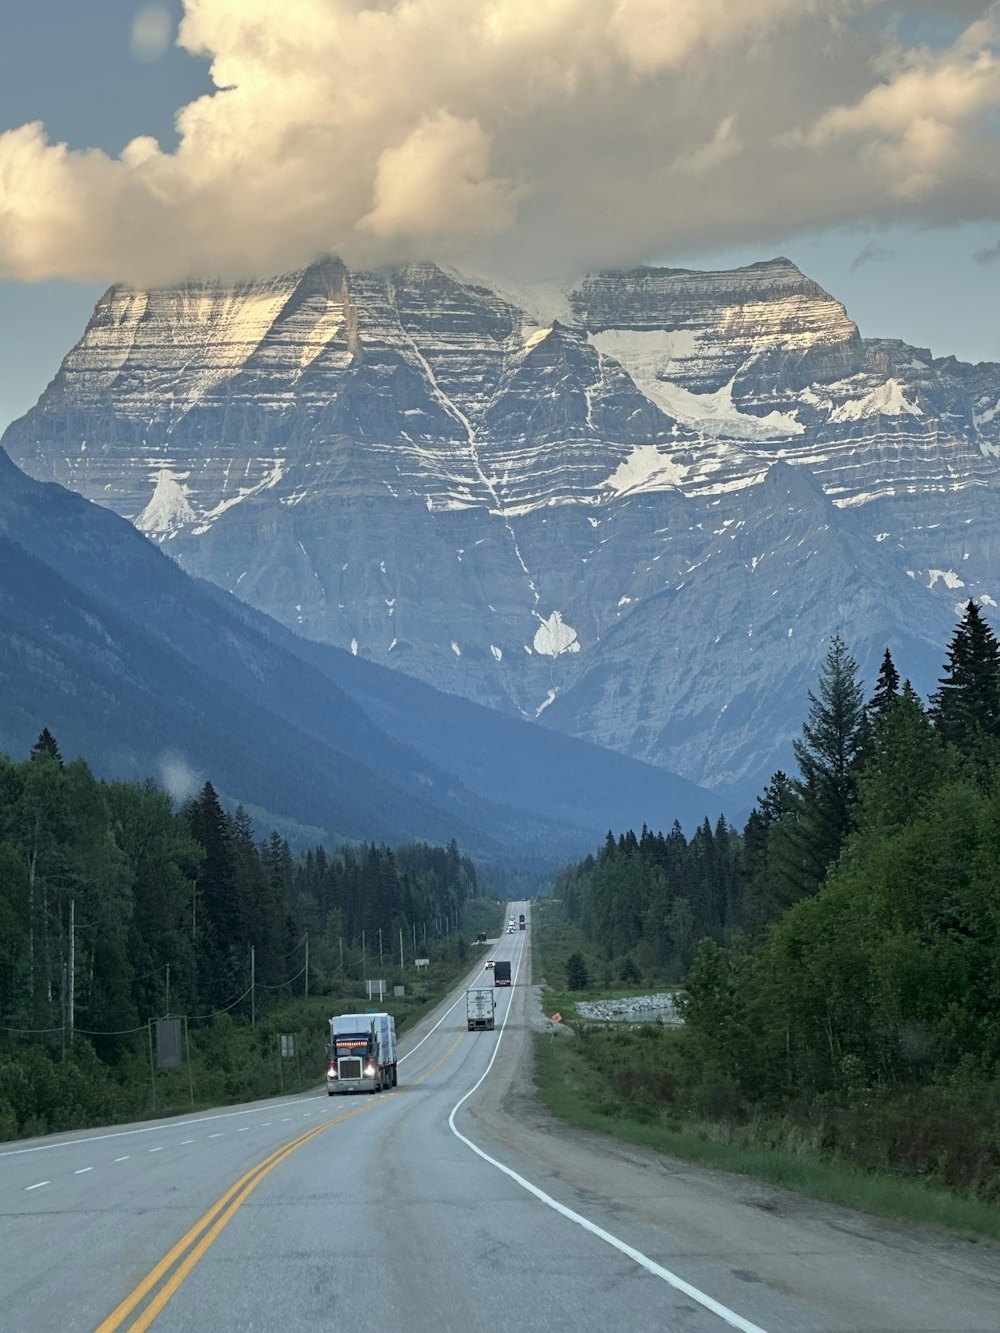 Un camion che percorre una strada con una montagna sullo sfondo